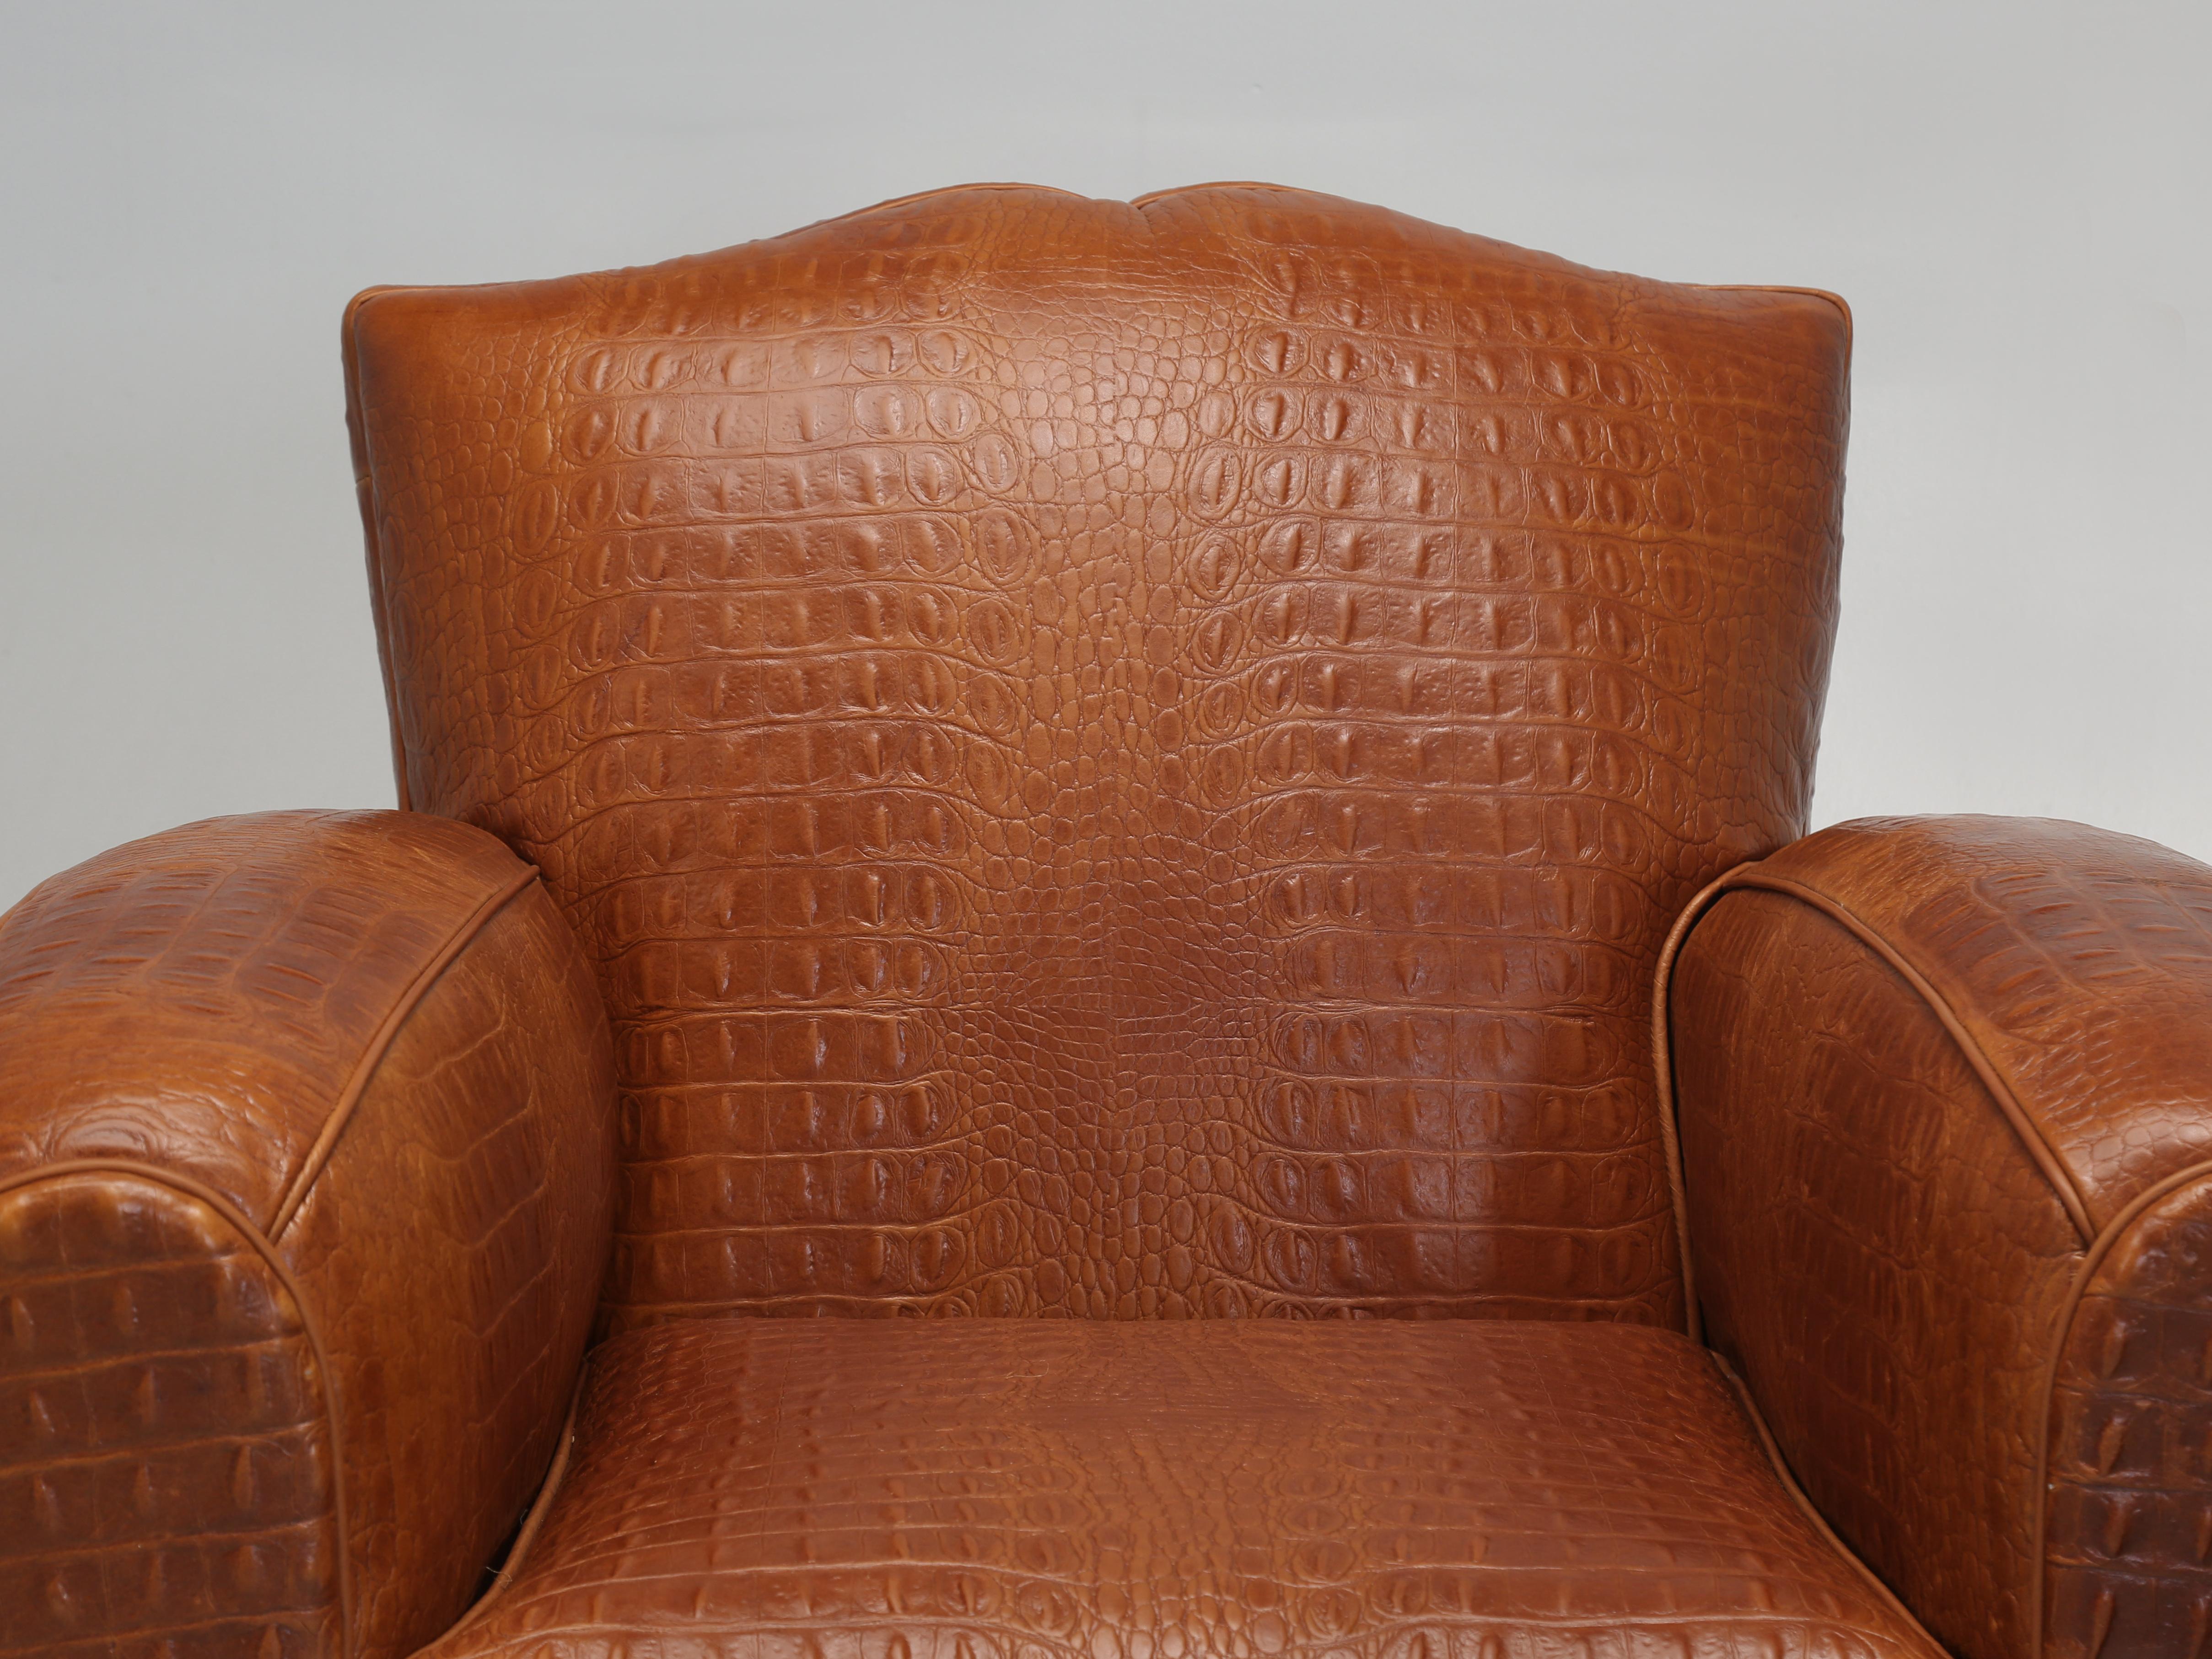 Französisch Art Deco Moustache Style Leather Club Chair in einem wunderschönen Cognac farbigen Faux Krokodil Echtleder aus Italien importiert und überraschend weich für eine geprägte Leder gepolstert. Wir haben uns von unserem